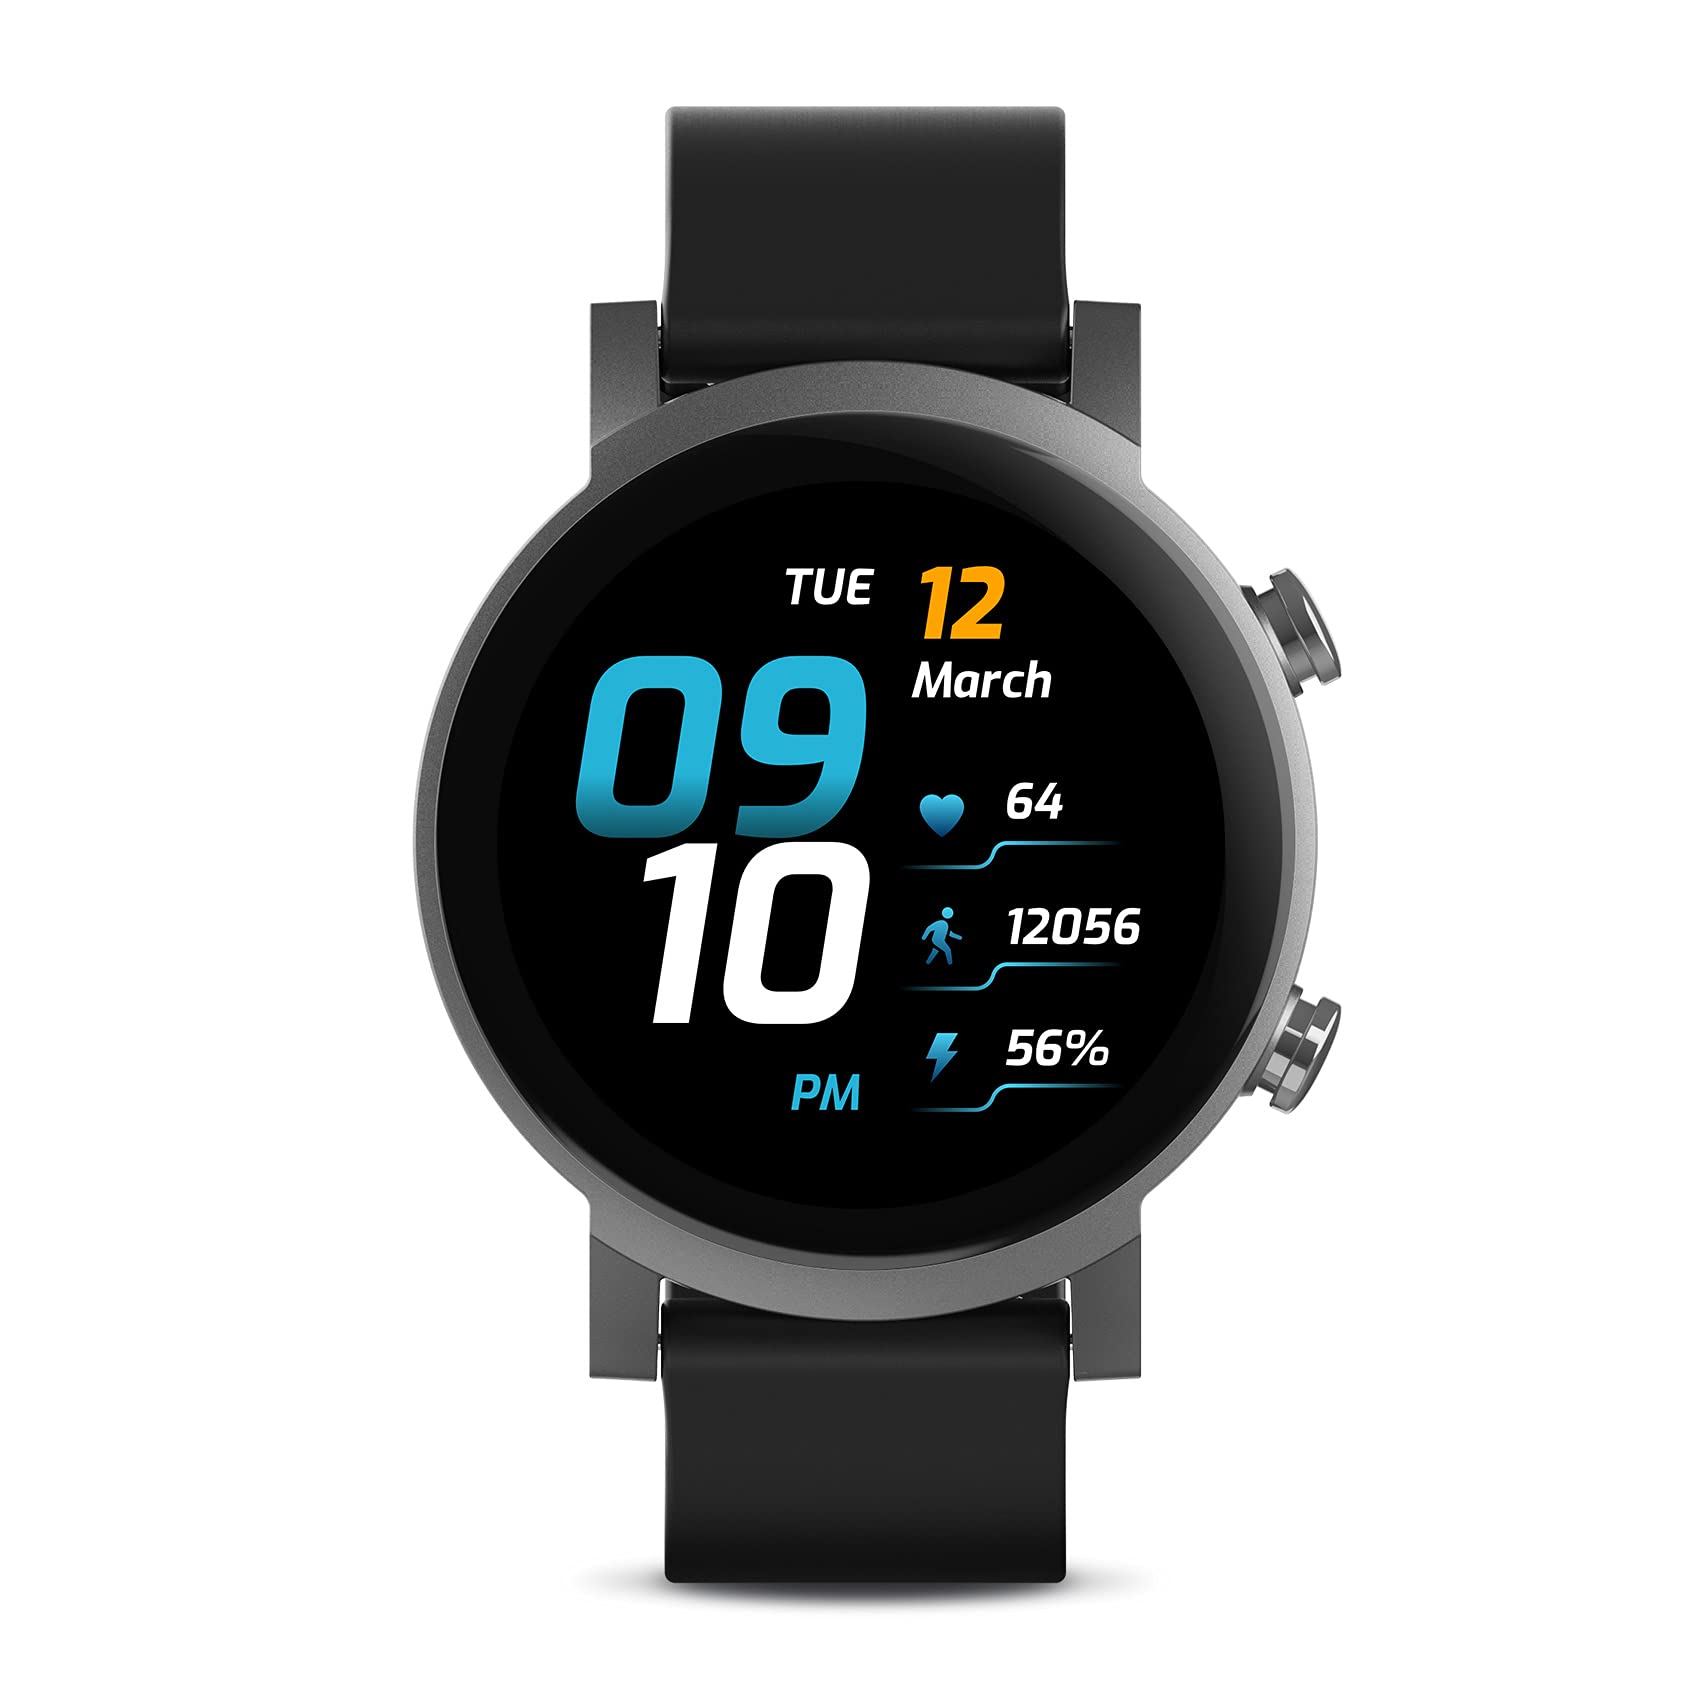 Ticwatch Inteligentny zegarek E3 Wear OS firmy Google d...